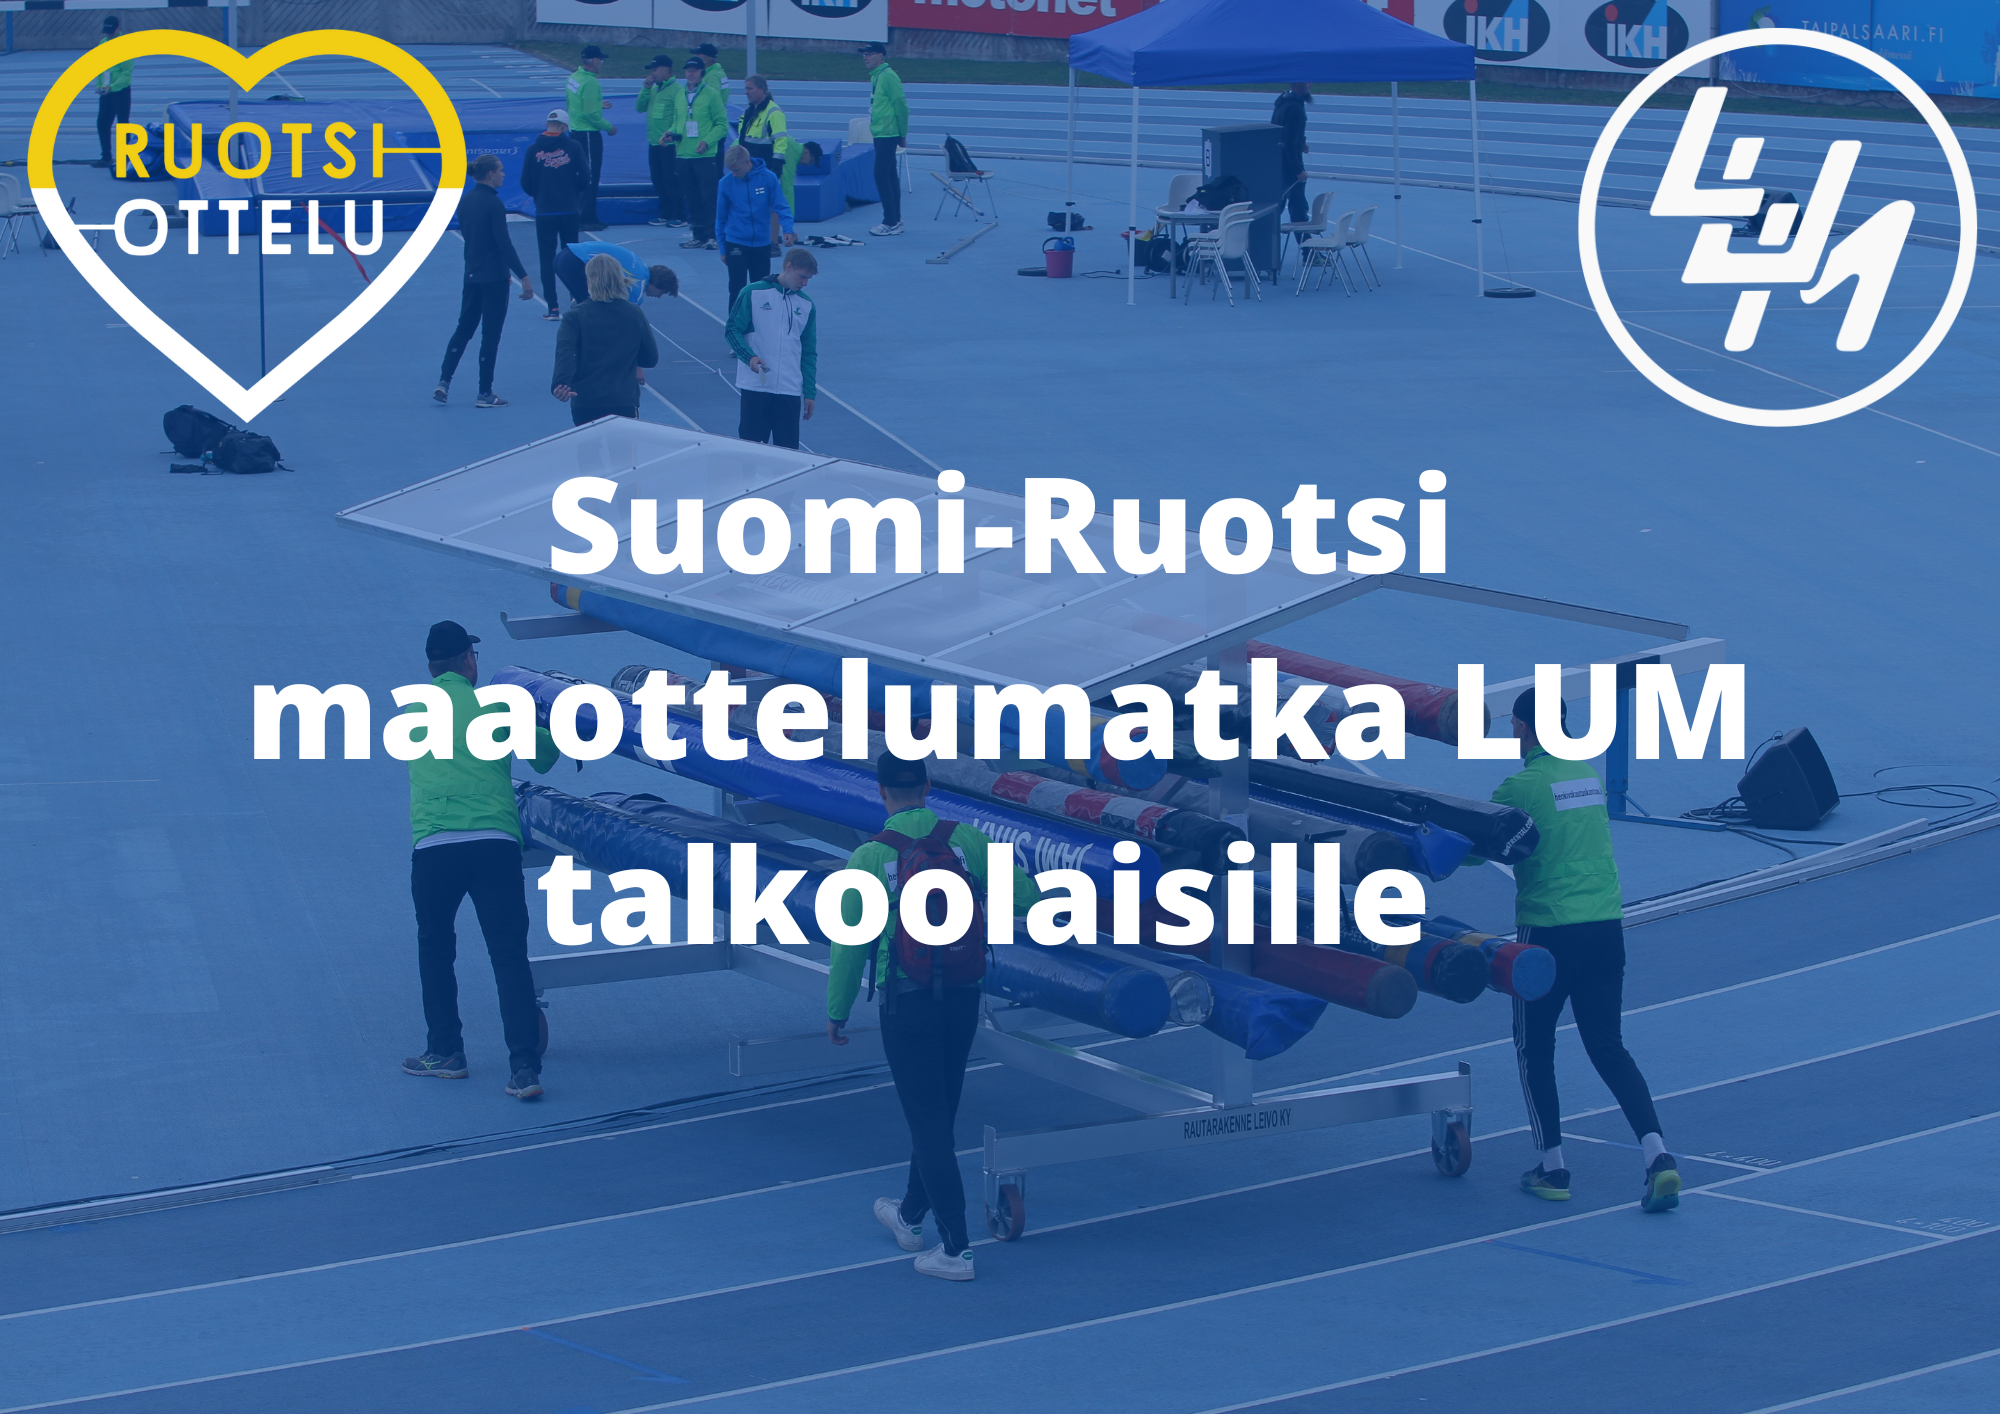 LUM vapaaehtoisten Suomi-Ruotsi maaottelumatka 3.9